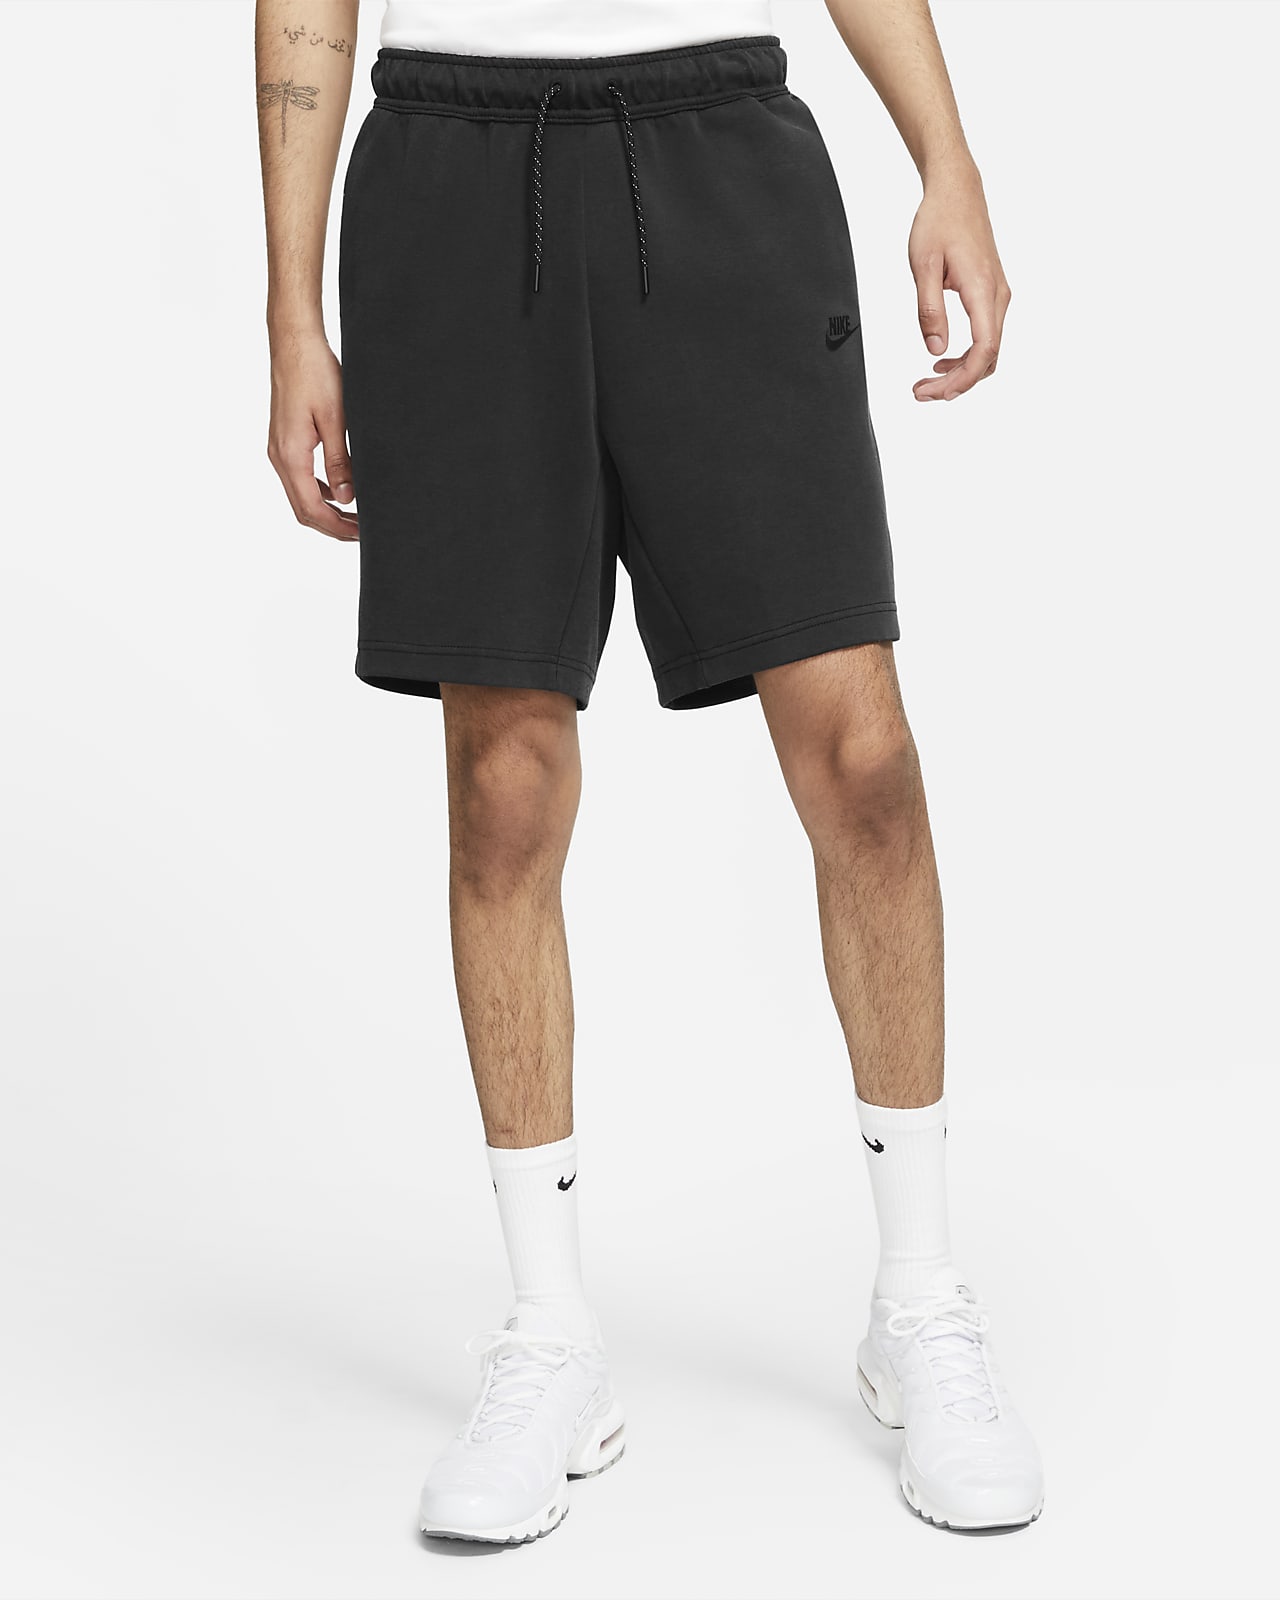 Shorts lavados para hombre para hombre Nike Sportswear Tech Fleece